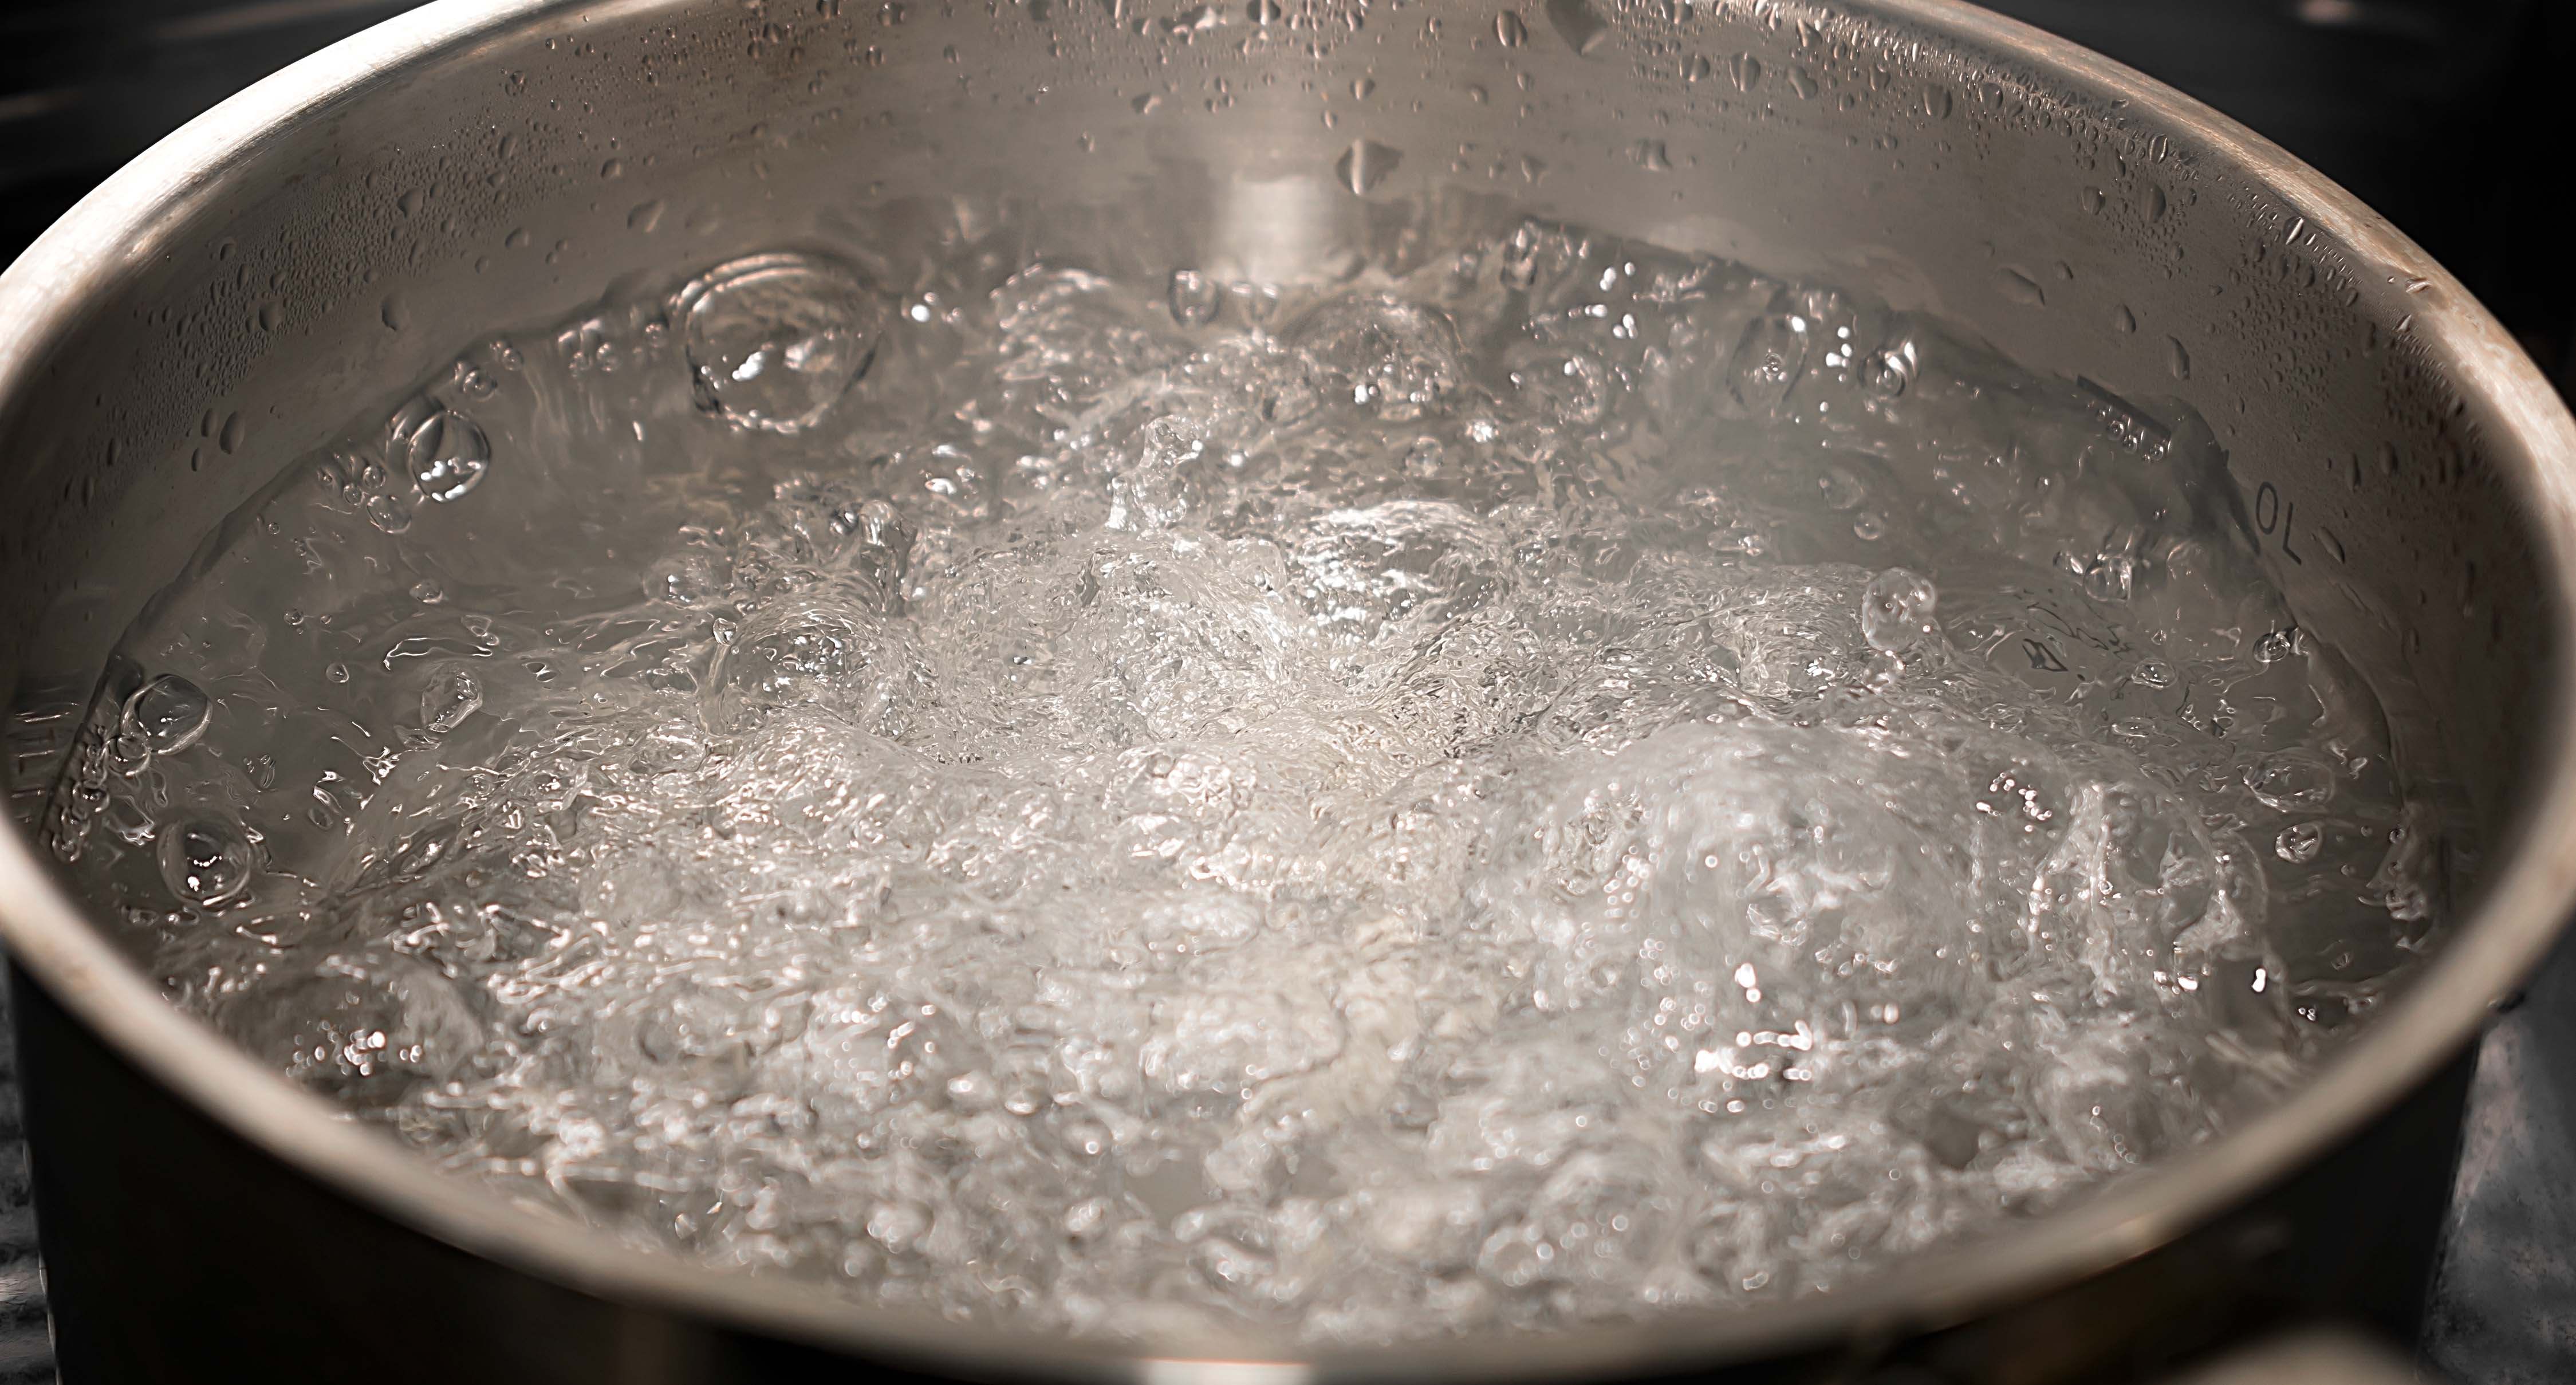 Es aconsejable hervir el agua para preparar el biberón?